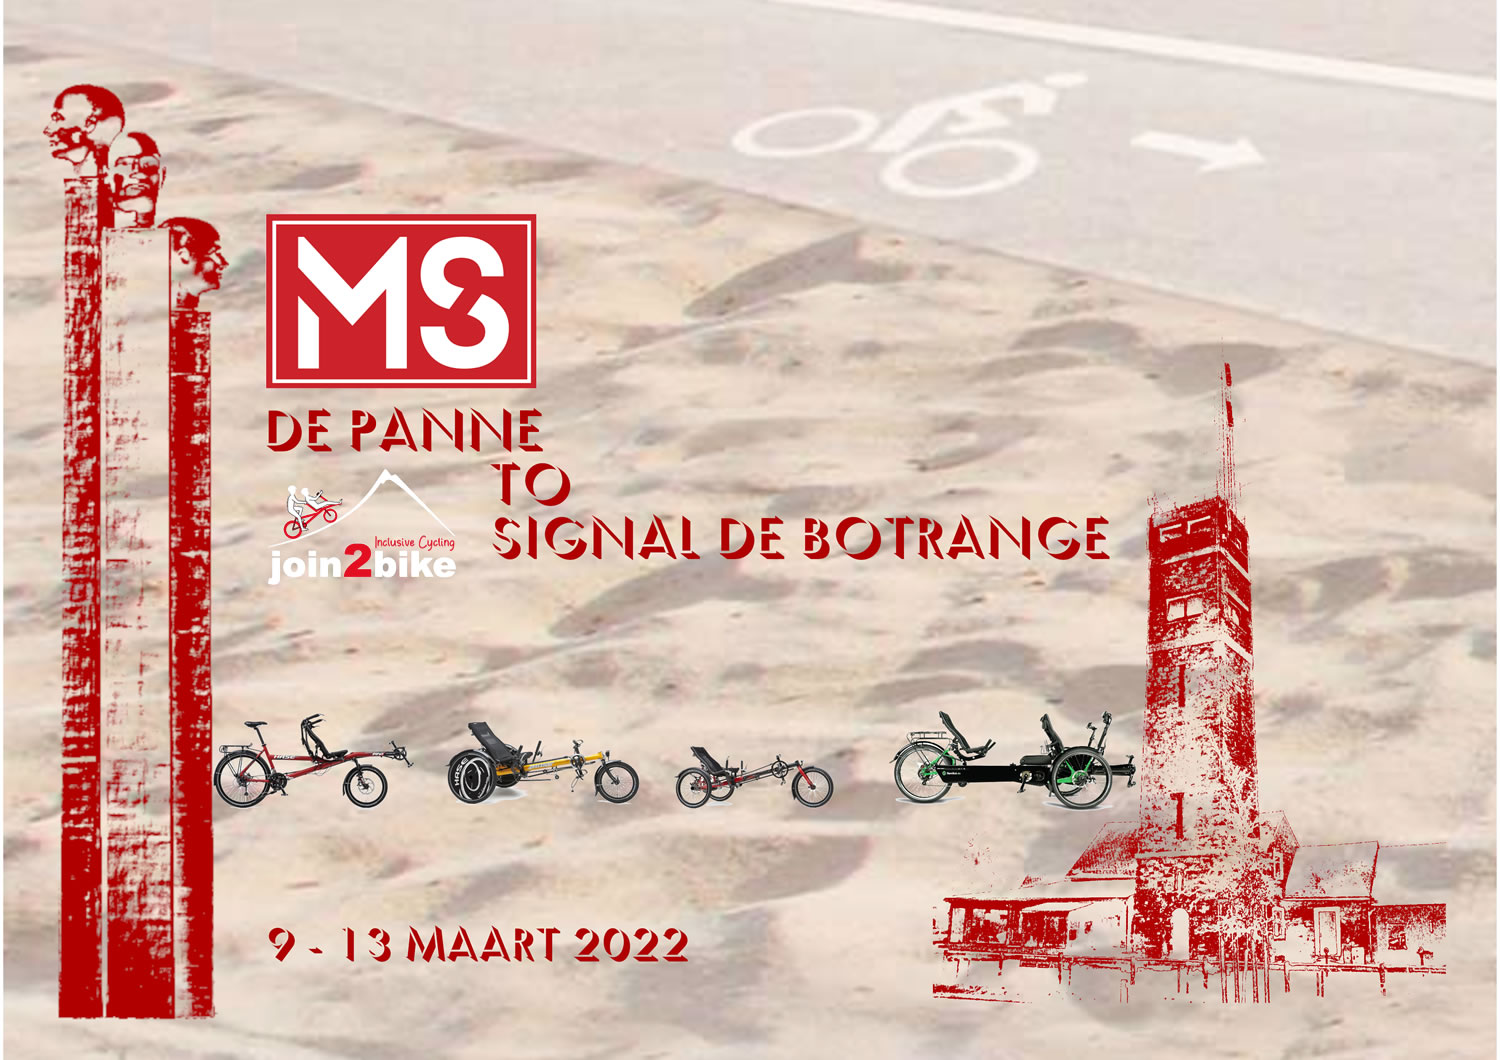 Join2bike MS-challenge: De Panne to Signal de Botrange, 9-13 maart 2022